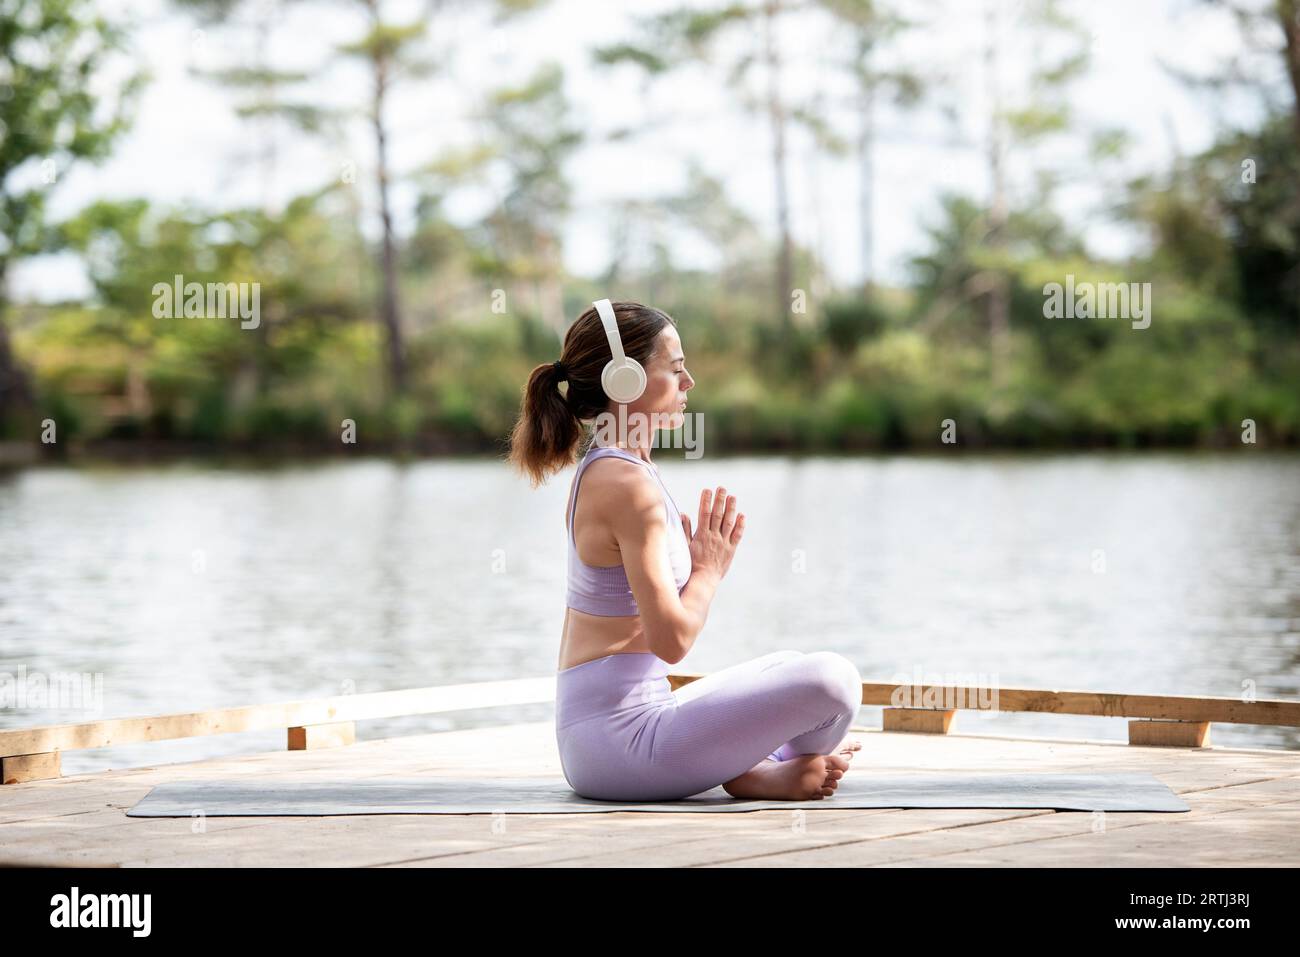 Femme sportive pratiquant le yoga sur une jetée au bord d'un lac, assise méditant avec des écouteurs, partie de la série. Banque D'Images